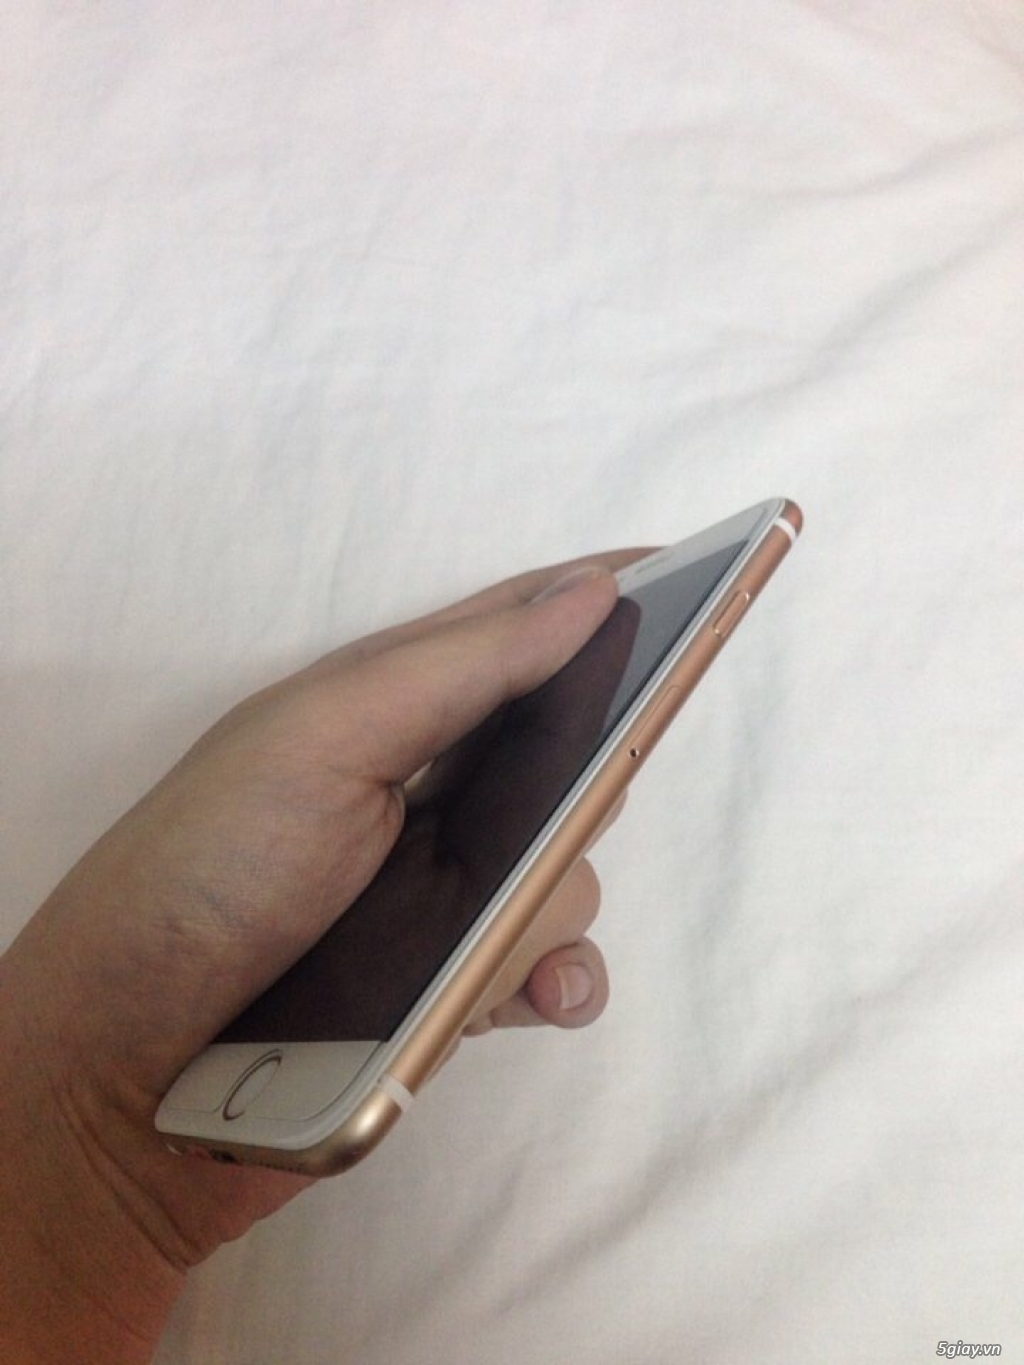 Bán iphone 6 gold 16gb Quốc Tế nguyên zin 100% - 1